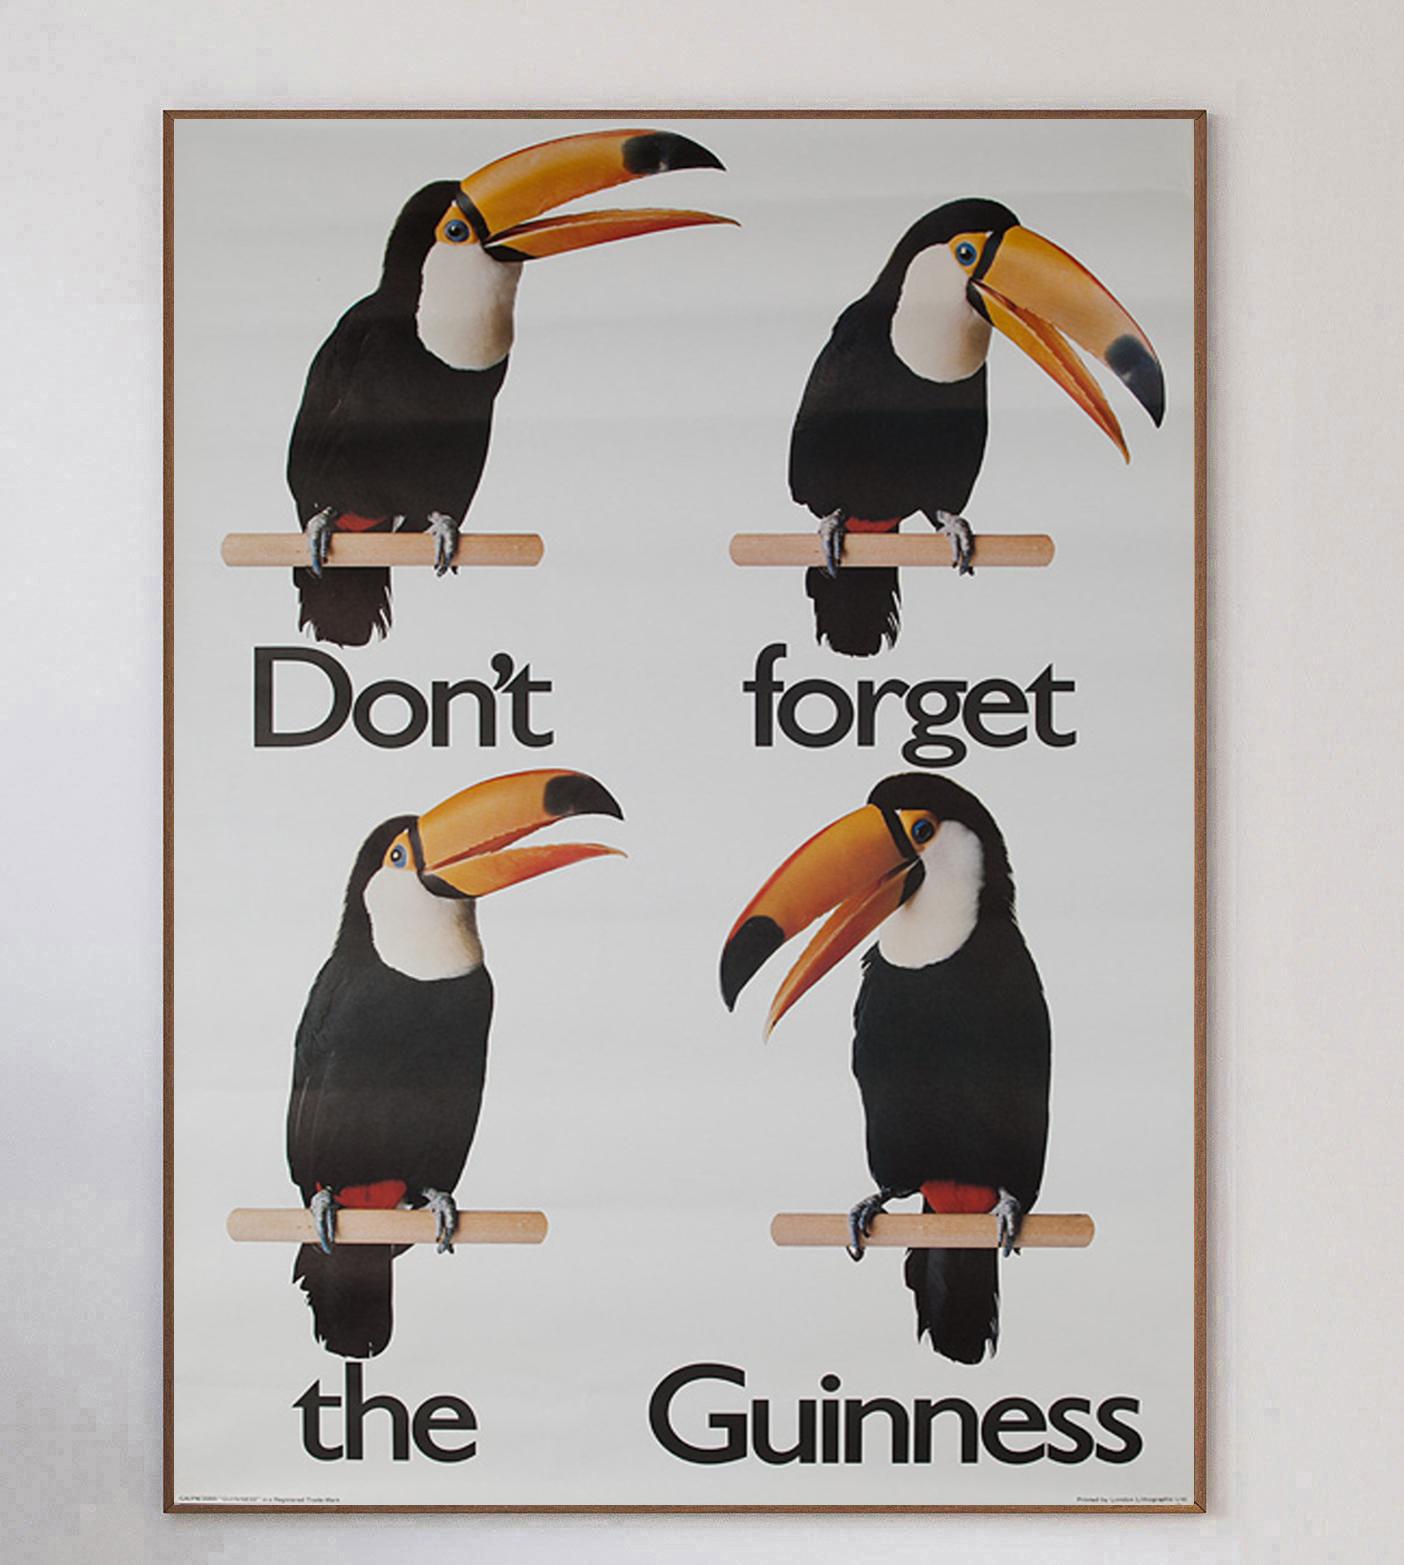 Wunderschönes und seltenes Plakat für Guinness, die irische Stout-Bierbrauerei, die 1759 von Jack Guinness in Dublin gegründet wurde. Guinness, eine der größten und erfolgreichsten Alkoholmarken der Welt, kann auf eine lange Geschichte ikonischer